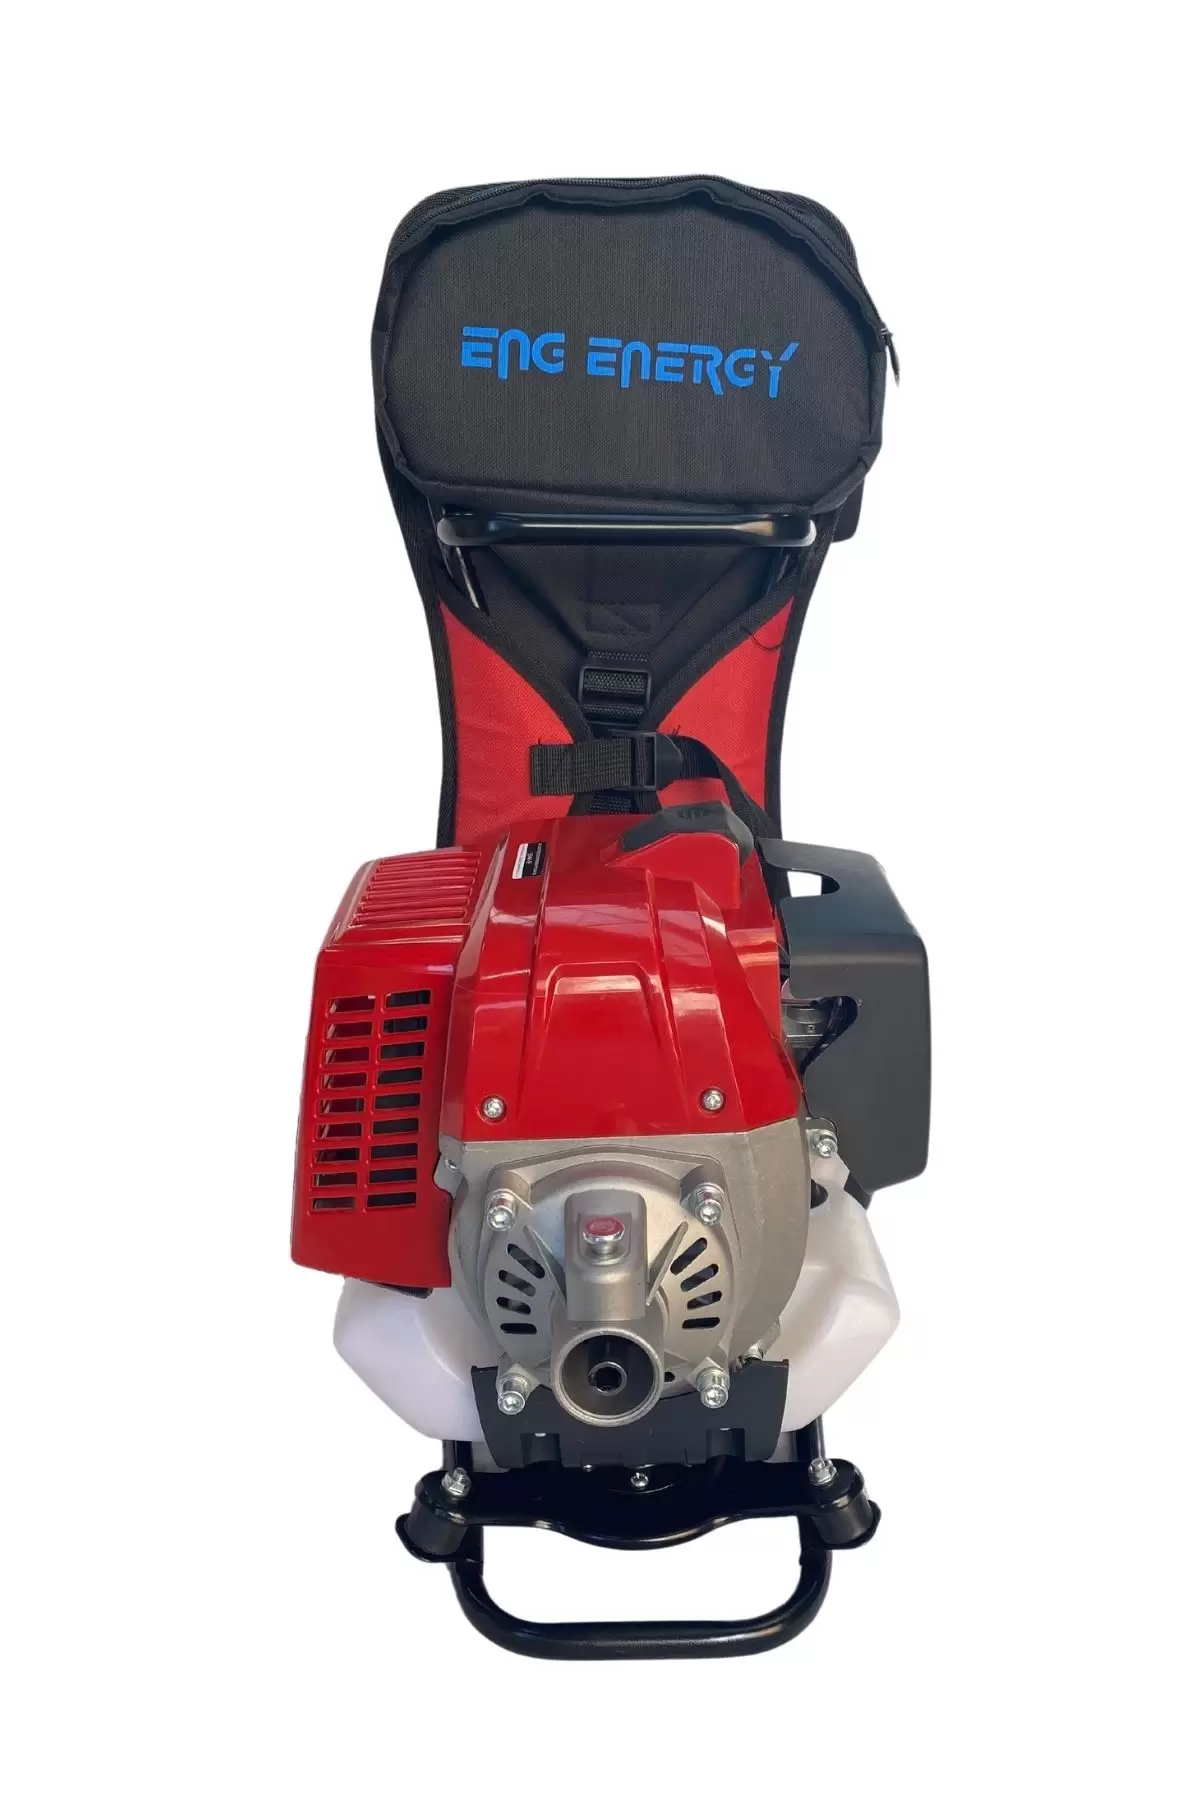 Energy BG520-5E Benzin Motorlu Sırt Tırpanı 1.9 Hp